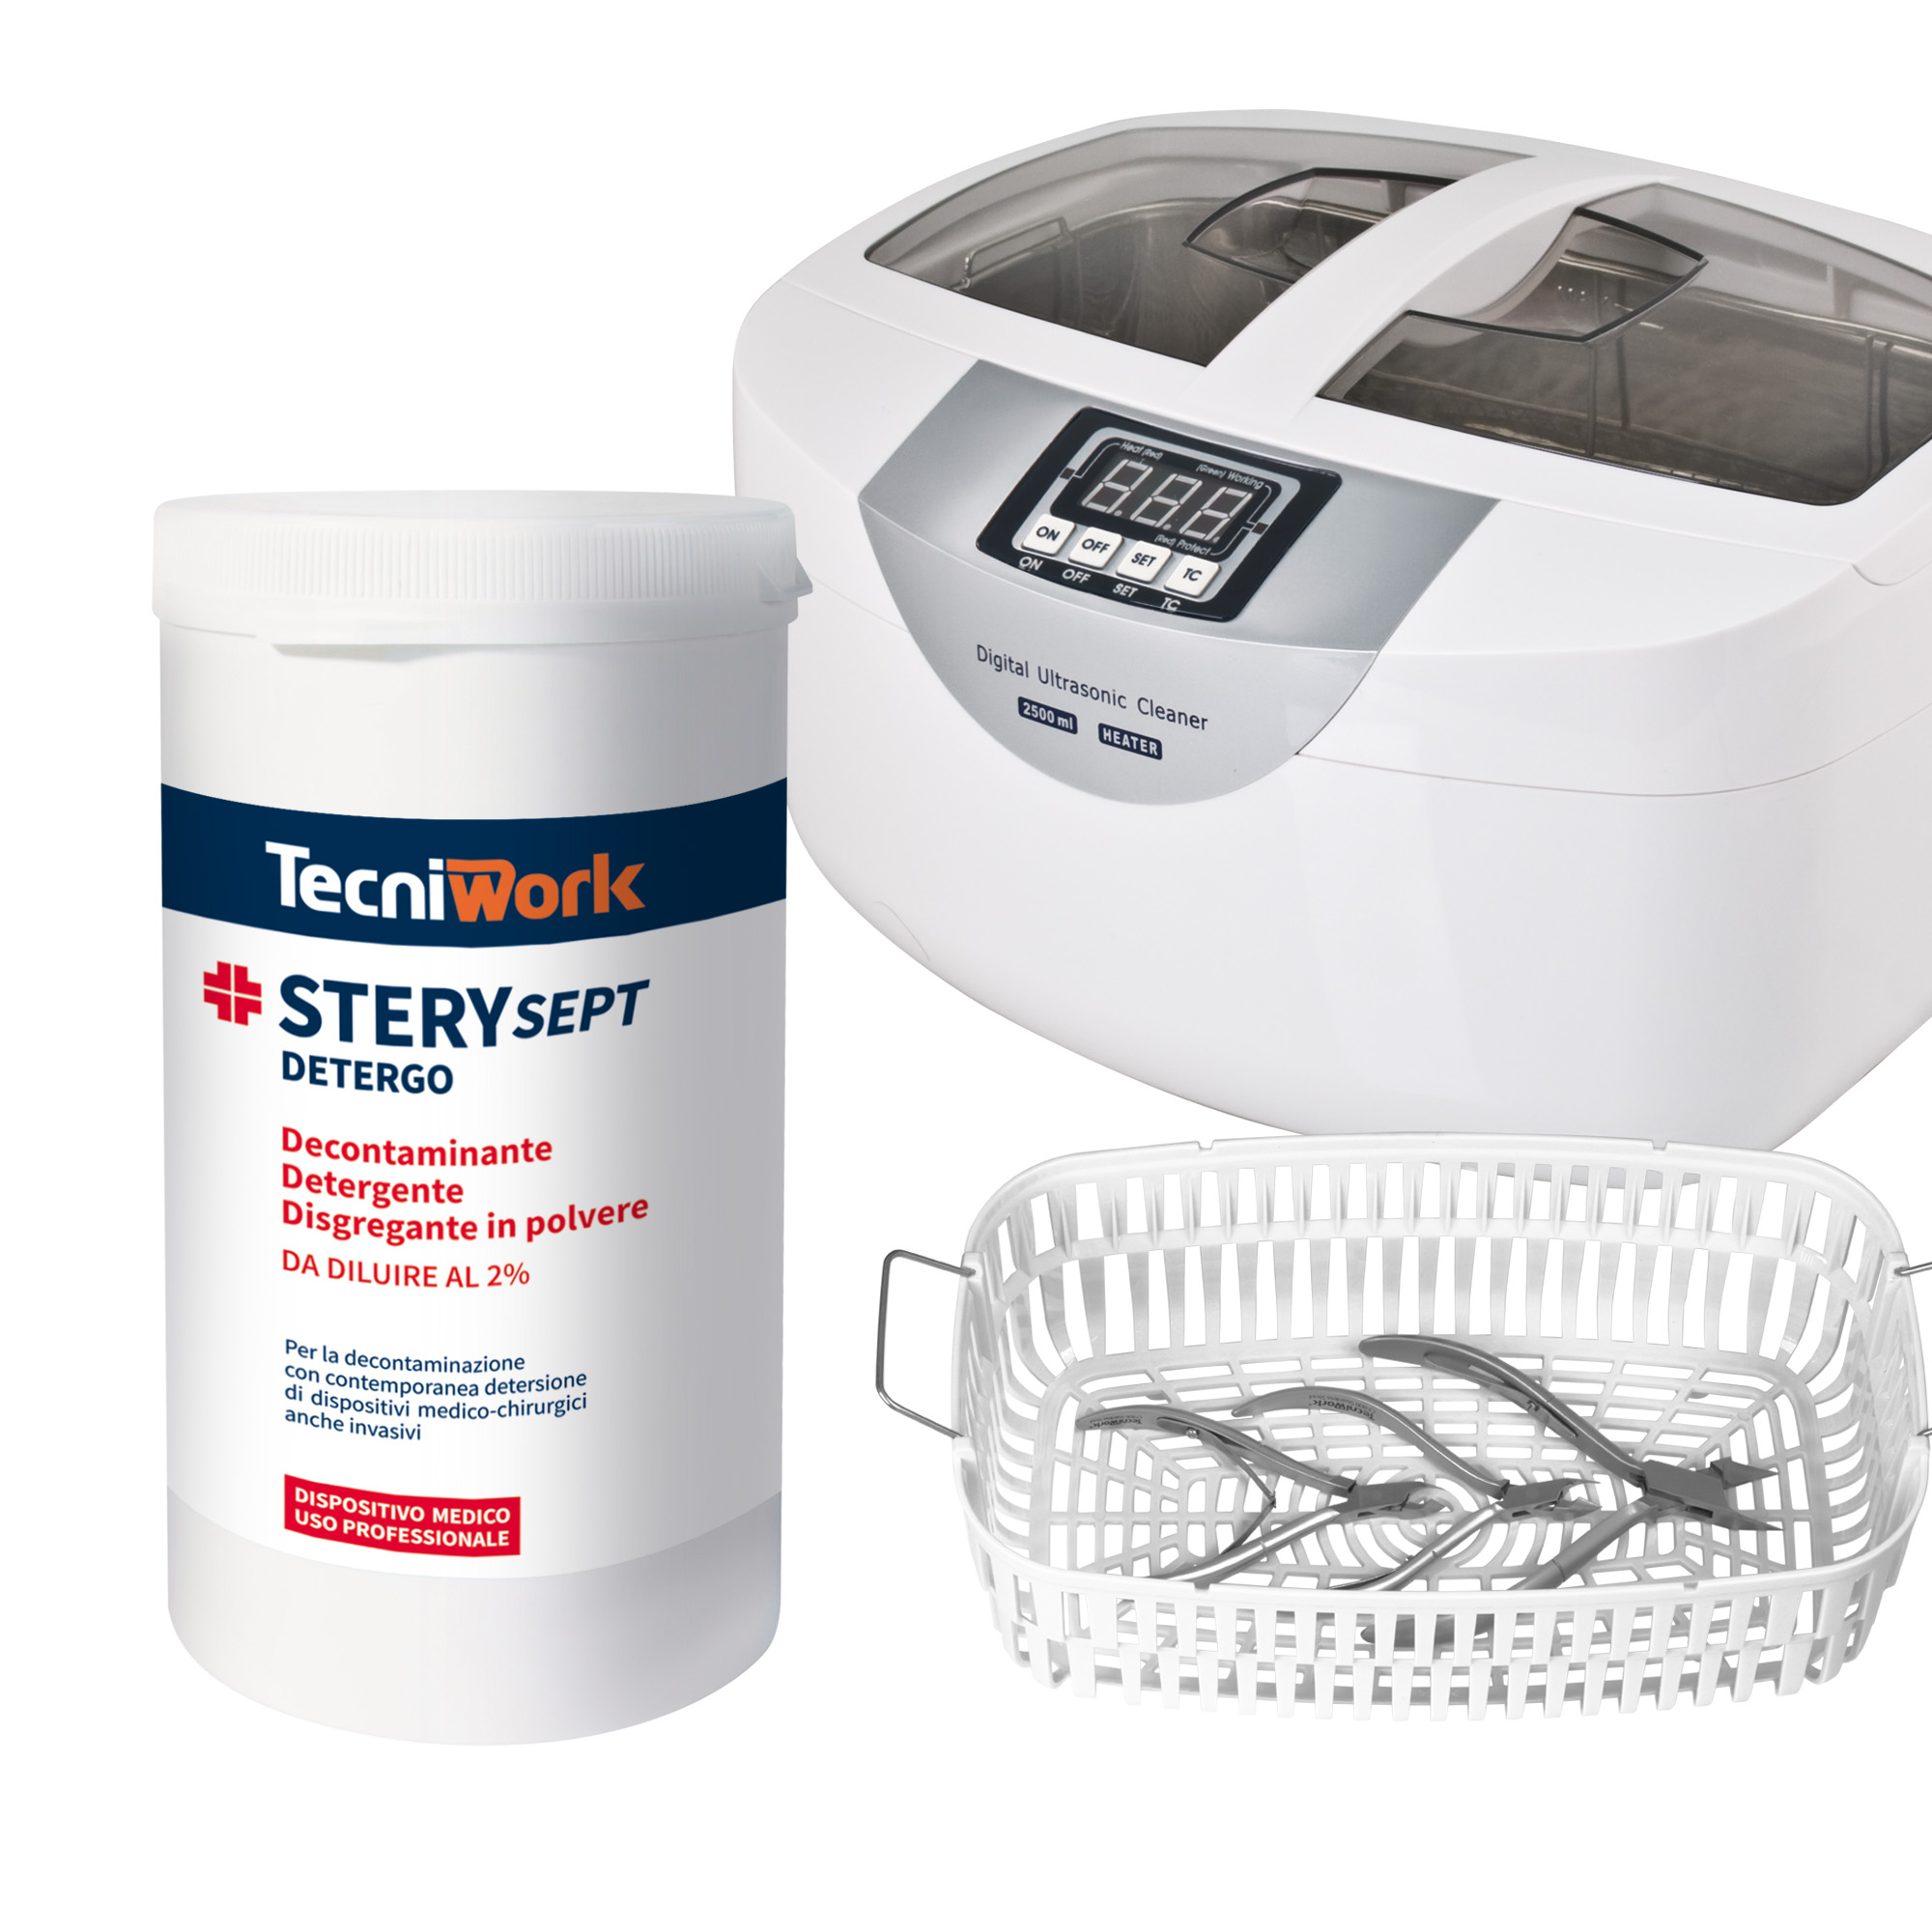 Décontaminant, désinfectant et stérilisateur à froid pour instruments avec enzymes désintégrantes Sterysept Detergo 1 kg